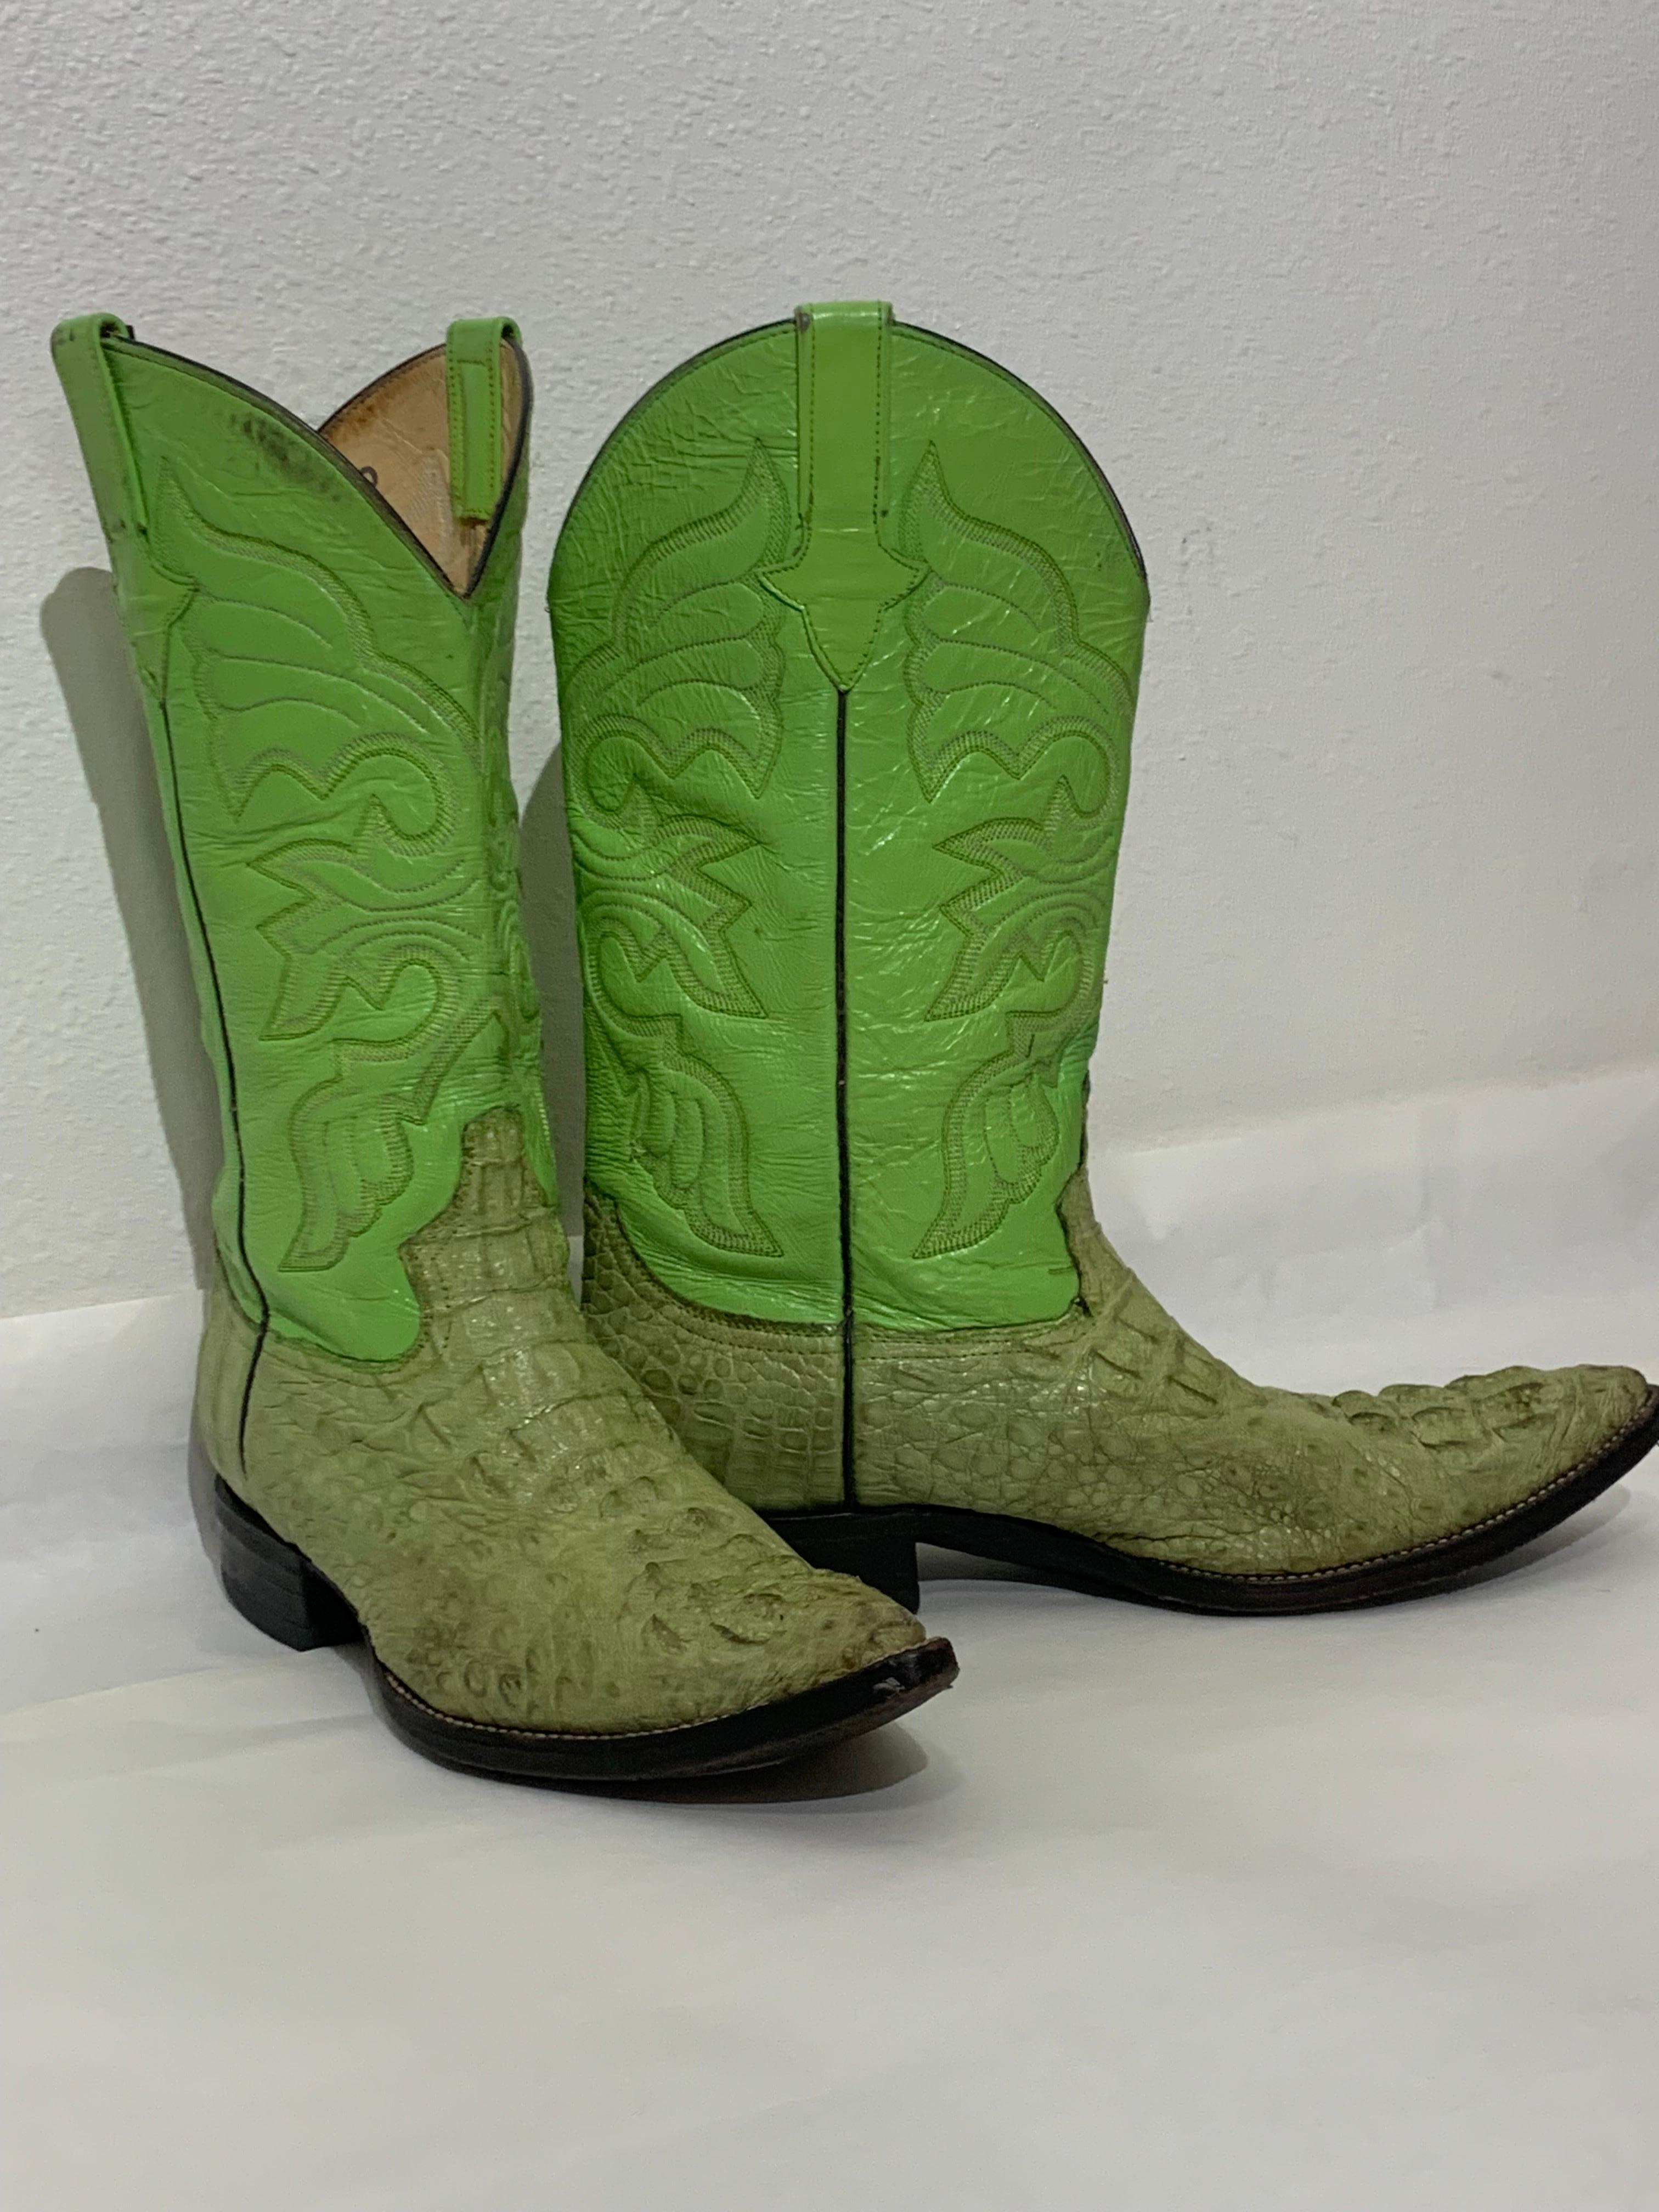 Gecko Green Leather & Crocodile Western Cowboy Boots US Size 8: Lederstiefel der Marke Hemisferio mit Western-genähtem Obermaterial und extrem geschupptem Krokodilleder-Vorderteil. Niedriger Absatz, schwarze Ledersohle und spitze Zehen. US Herren